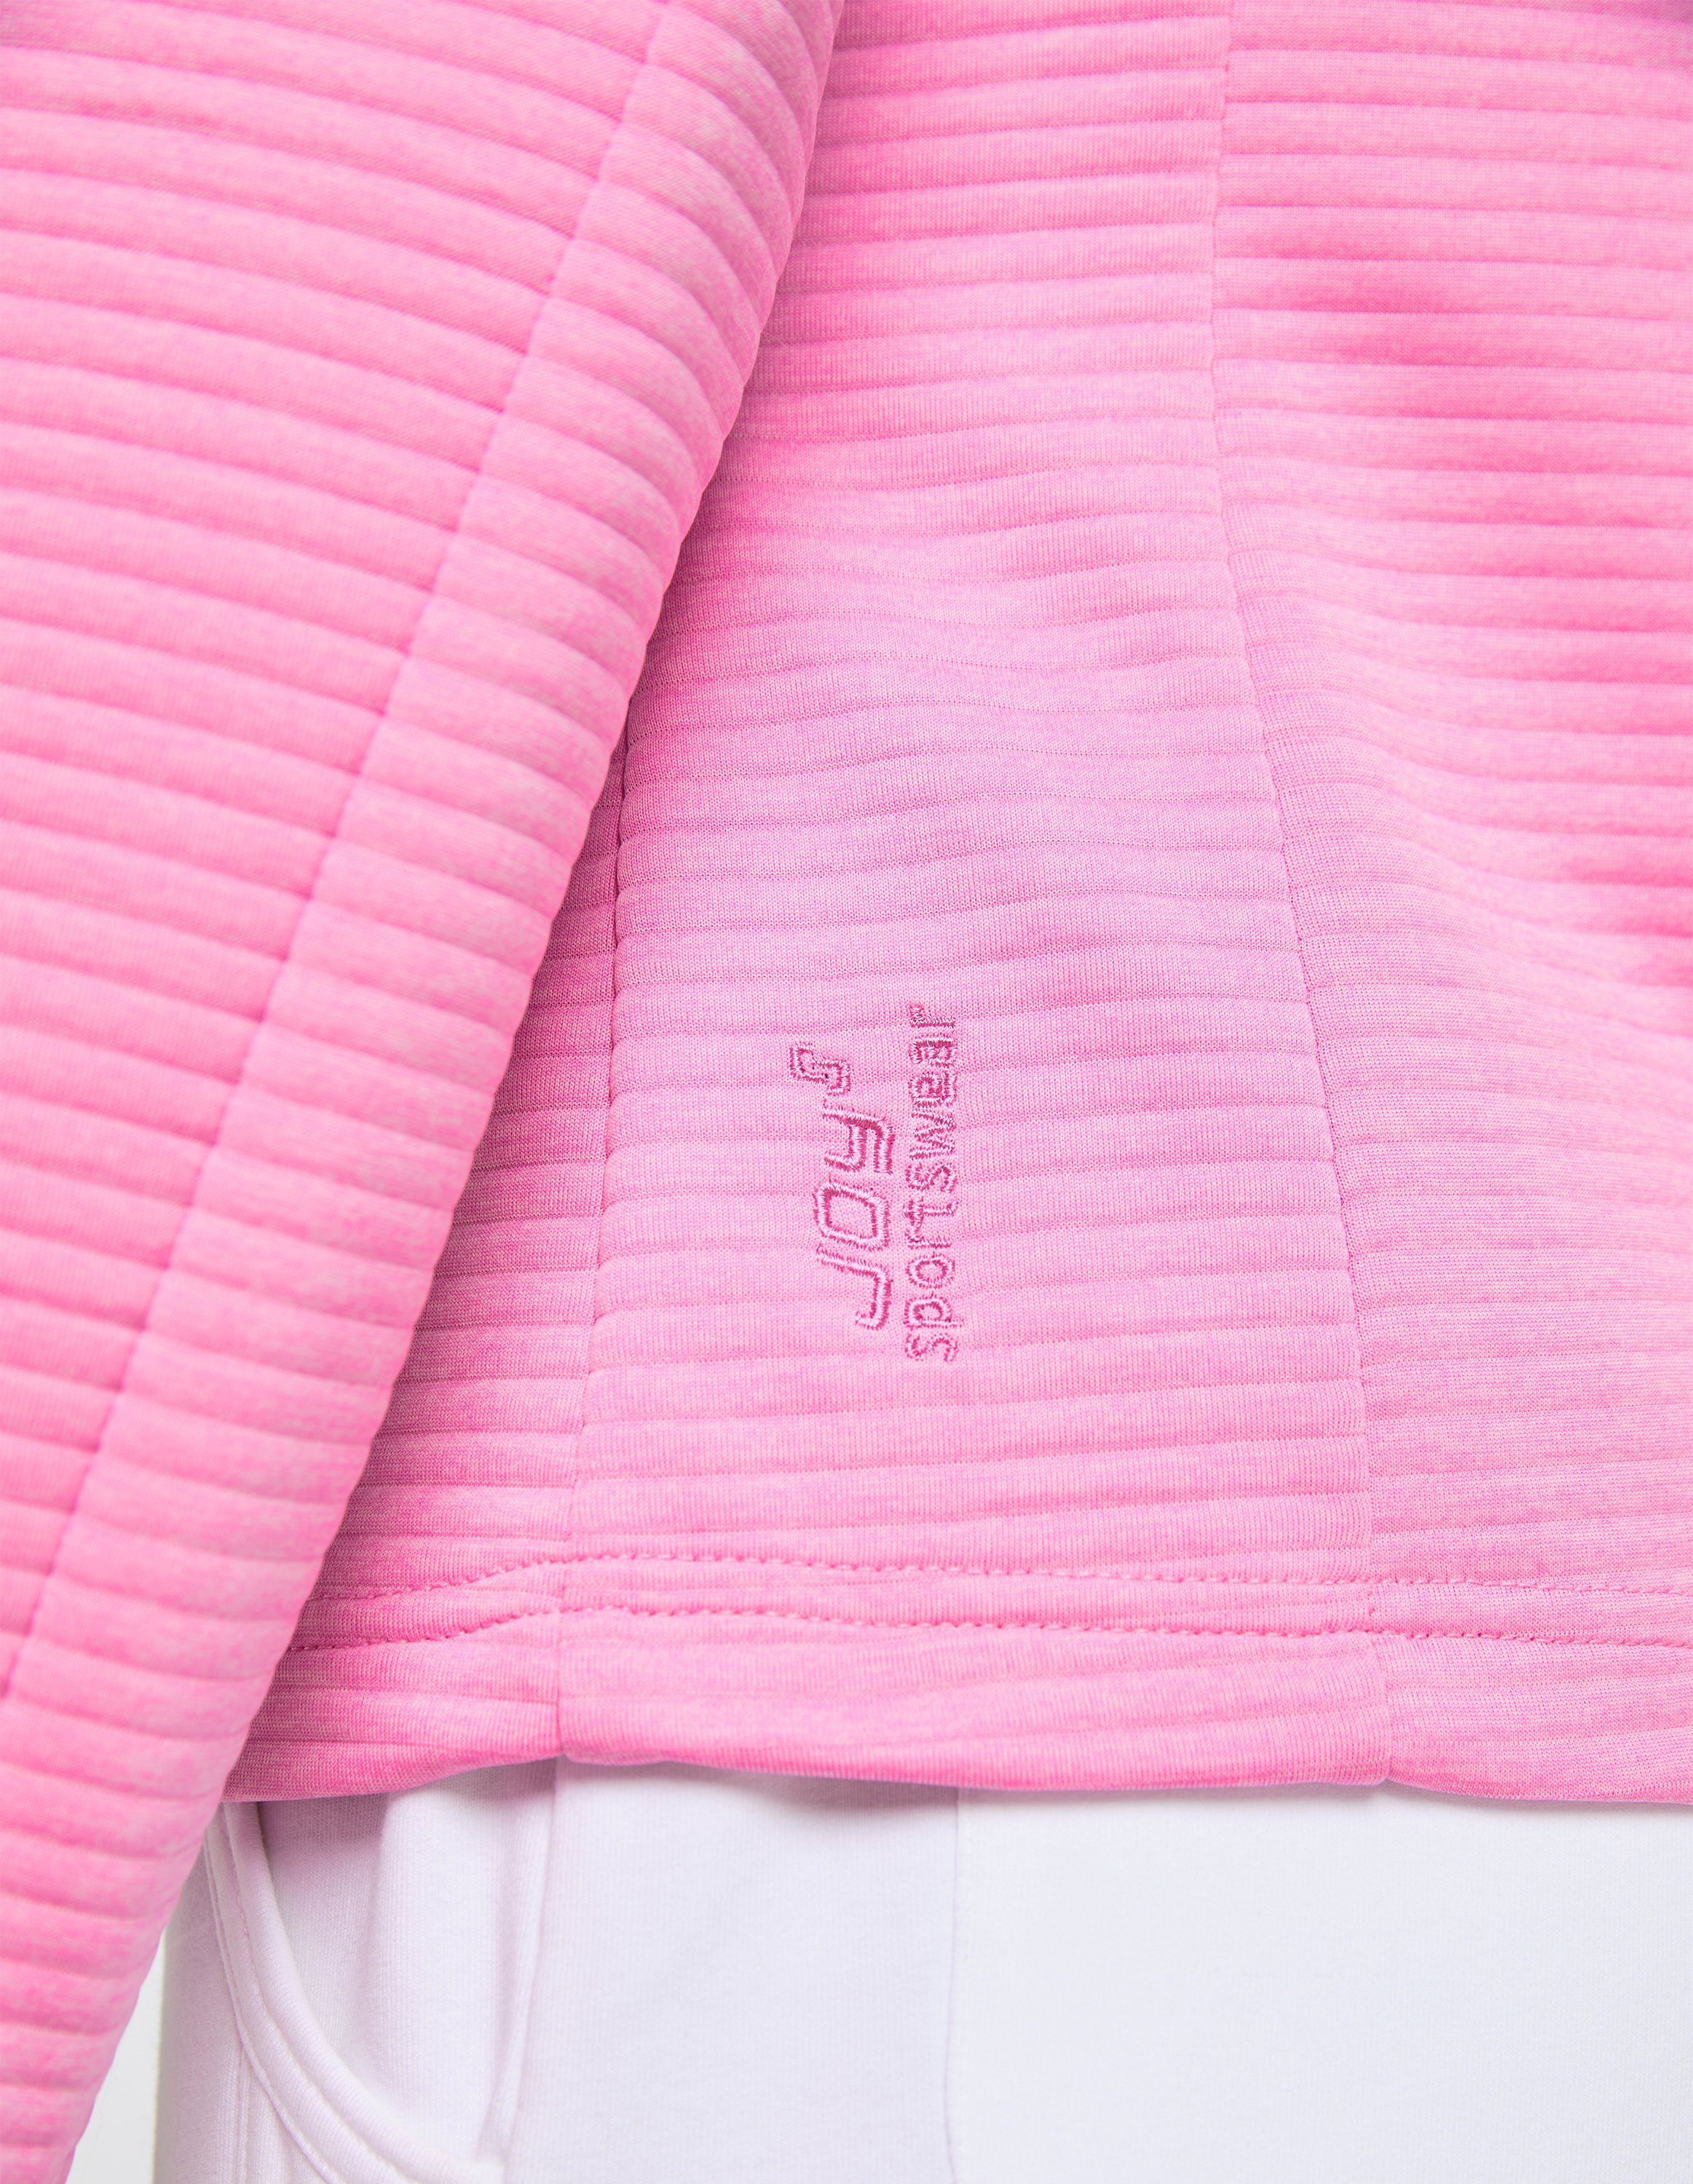 Jacke pink melange Trainingsjacke Joy cyclam Sportswear PEGGY